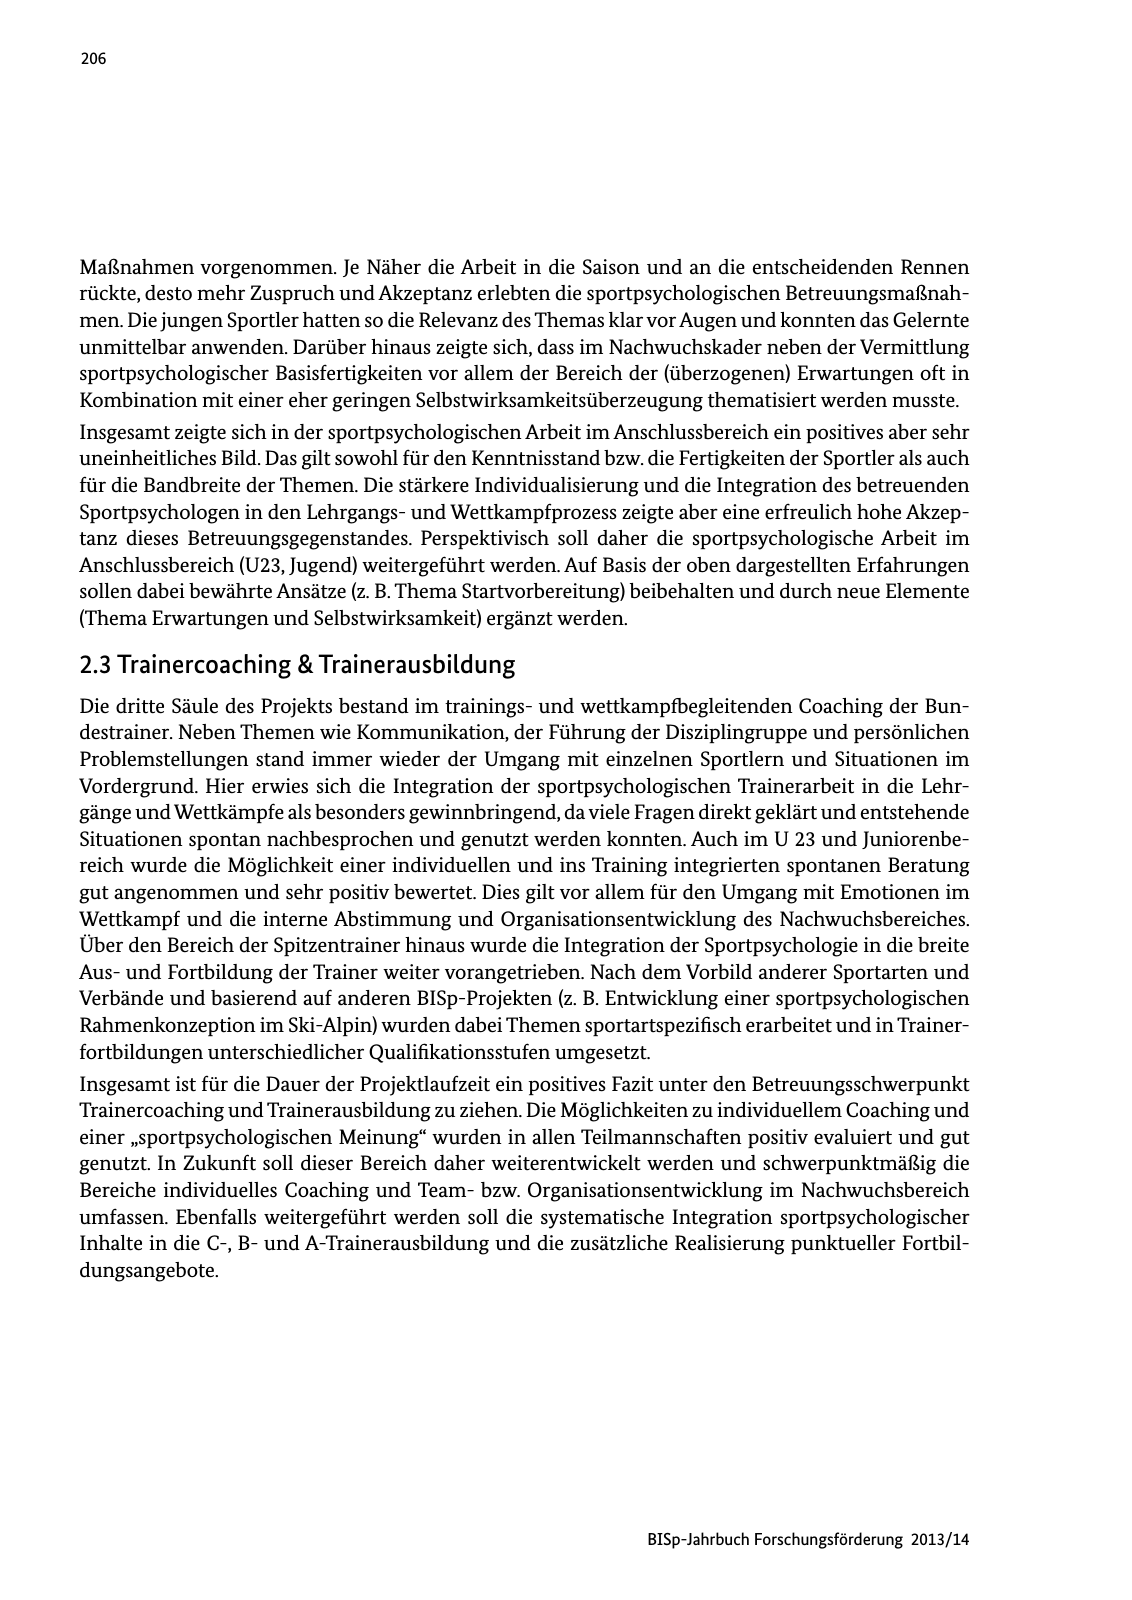 Vorschau BISp-Jahrbuch Forschungsförderung 2013/14 Seite 207